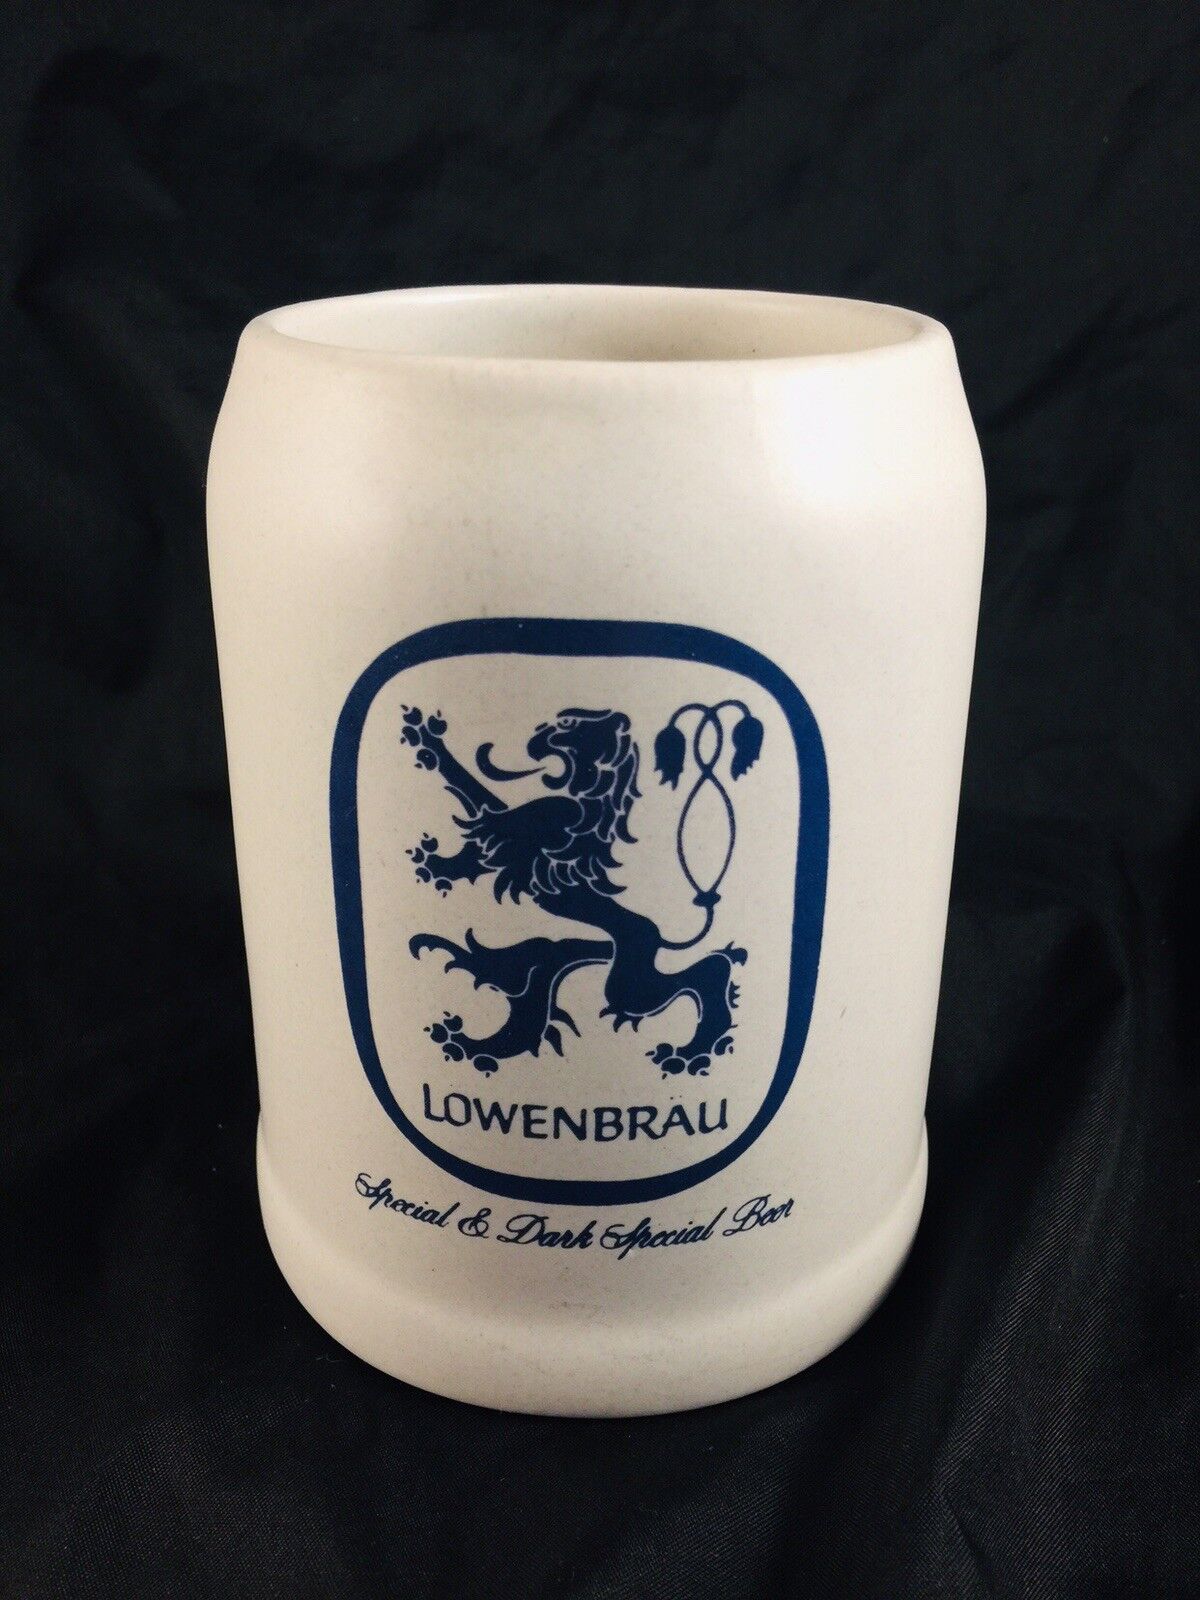 LOWENBRAU Special & DARK SPECIAL BEER Mug 5\